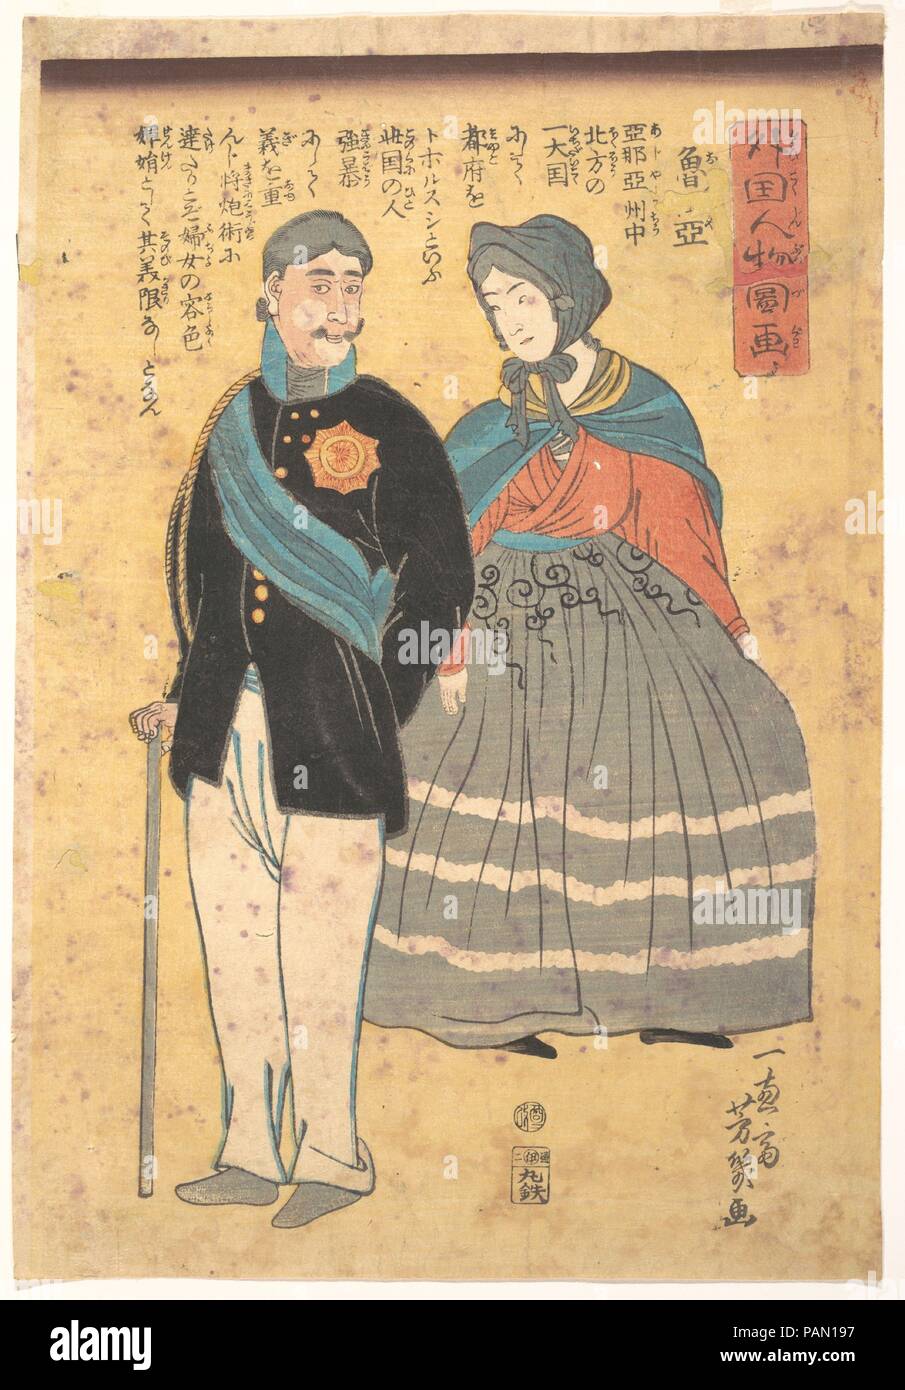 Oficial ruso con su esposa. Artista: Utagawa Yoshiiku (japonés, 1833-1904). Cultura: Japón. Dimensiones: Oban 13 3/4 x 9 3/4 in. (34,9 x 24,8 cm). Fecha: 1861. Museo: Museo Metropolitano de Arte, Nueva York, Estados Unidos. Foto de stock